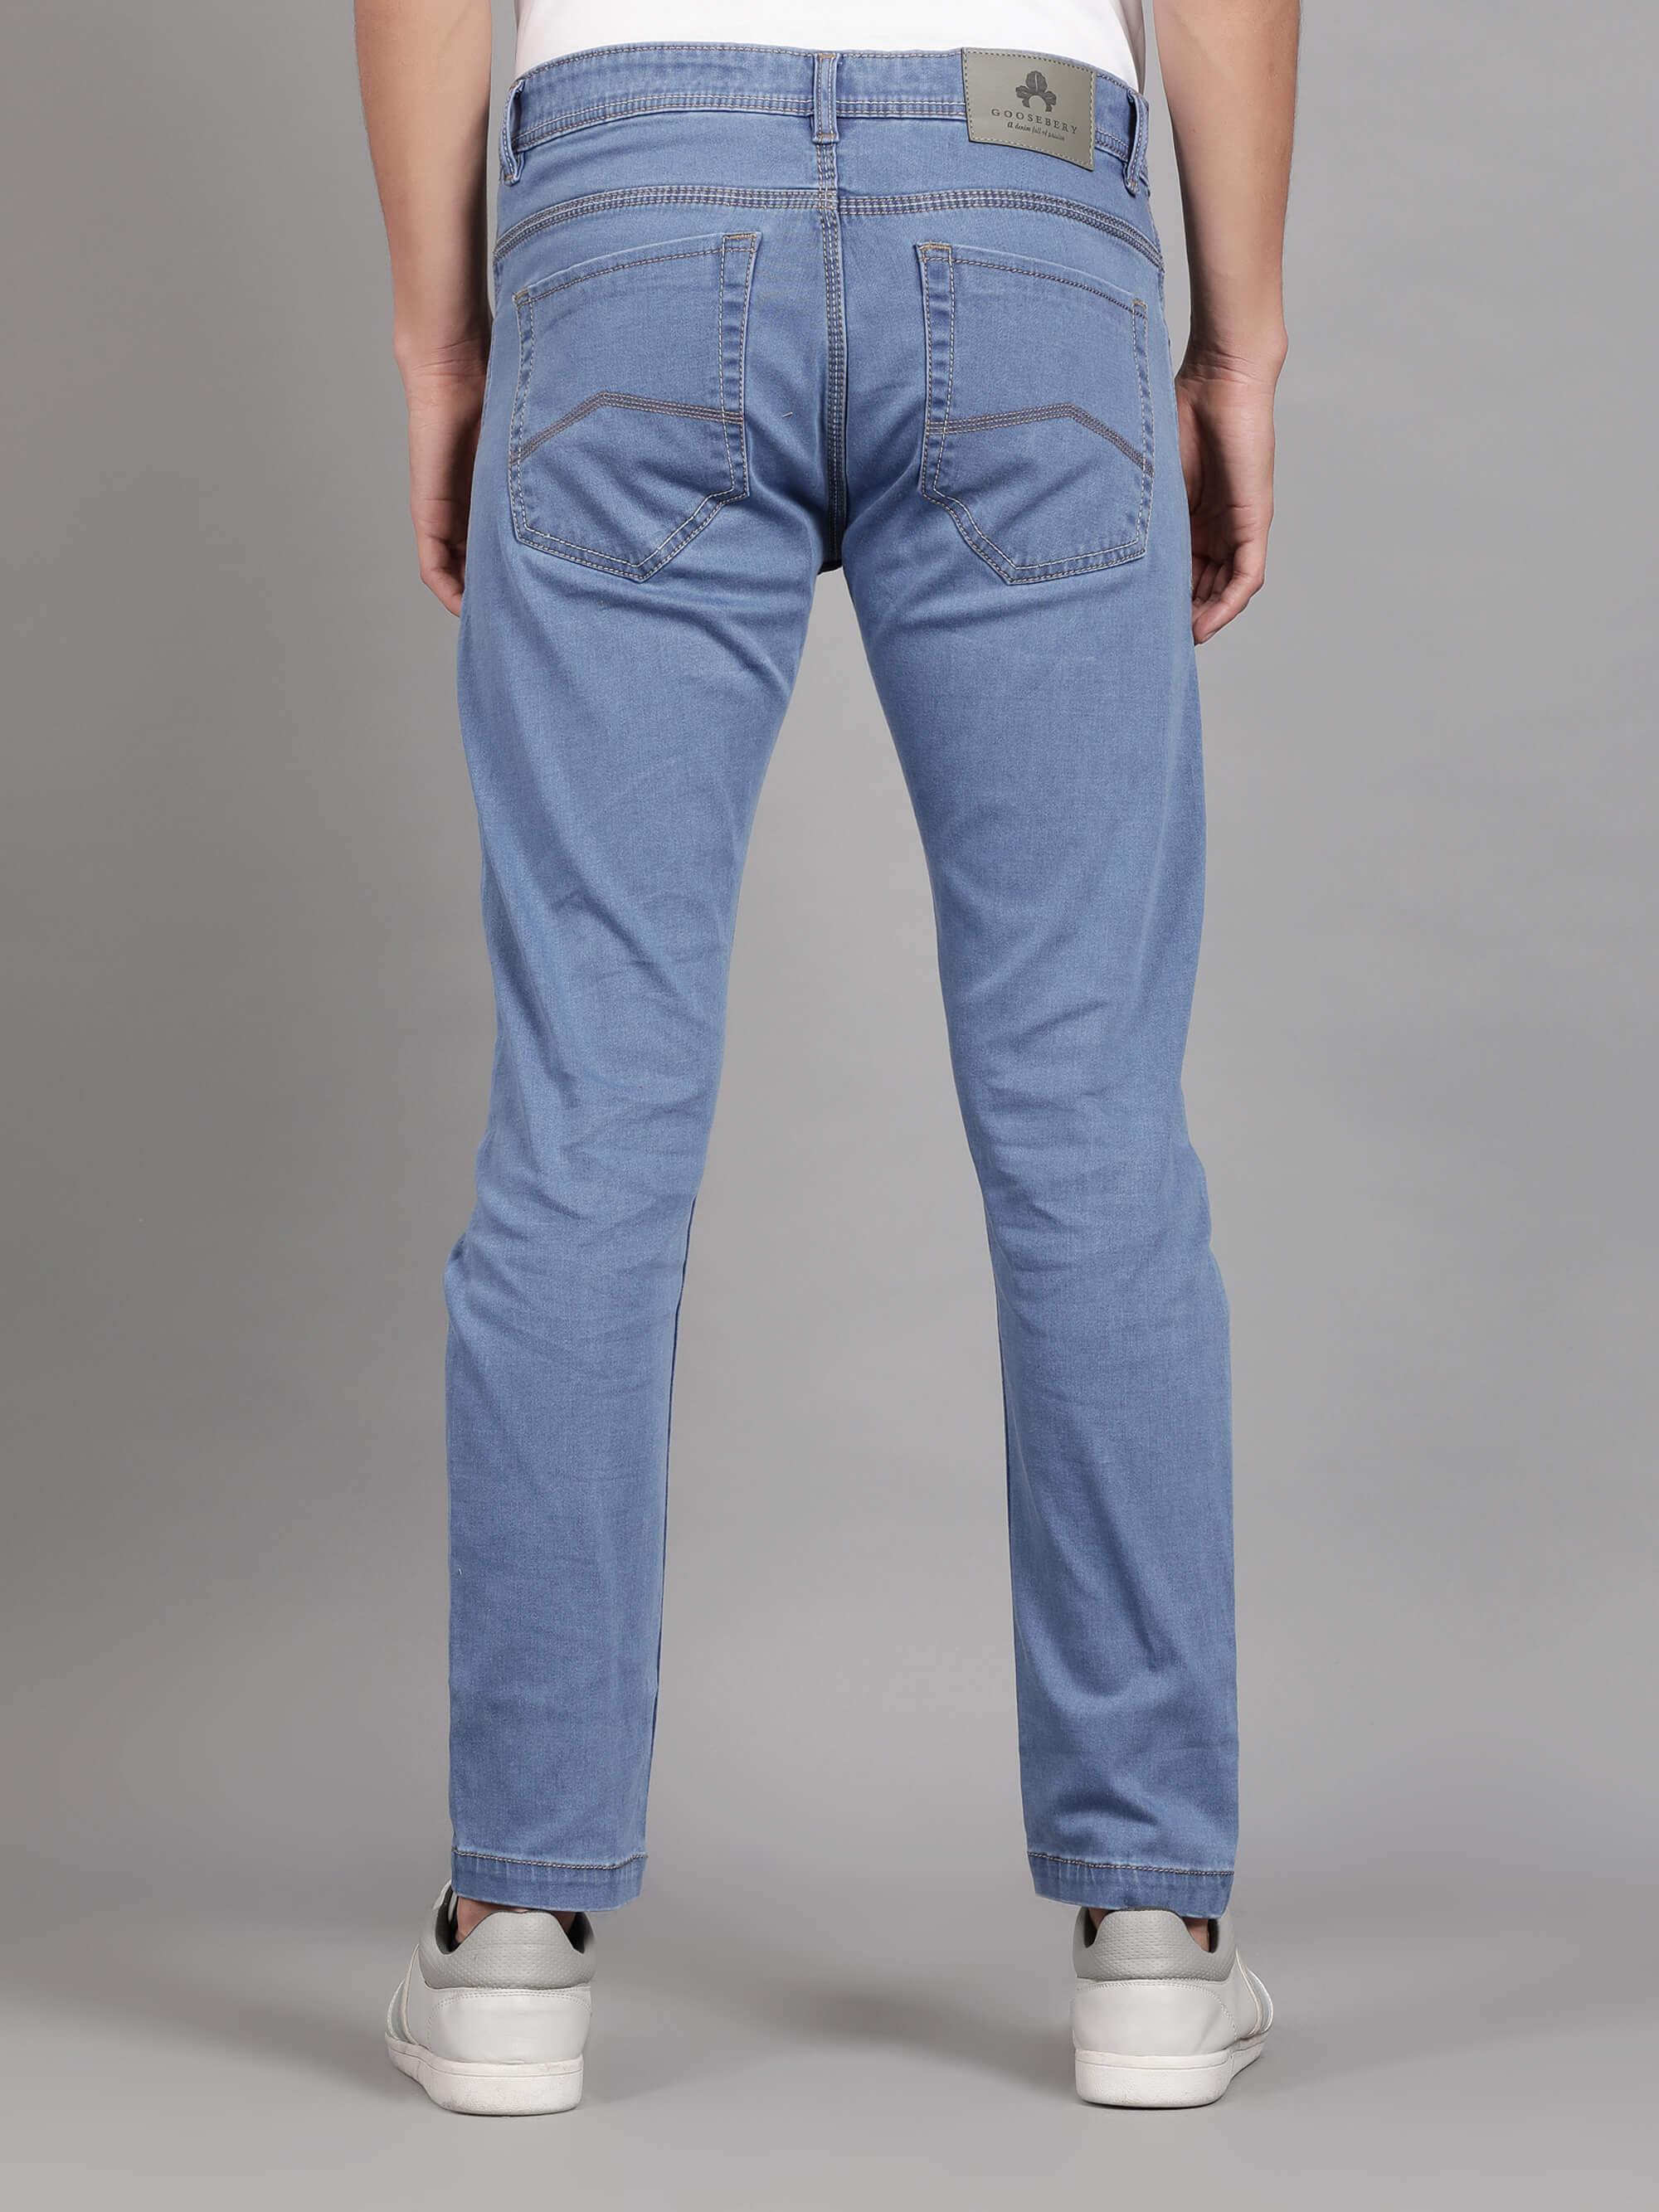 Buy Men Blue Dark Slim Fit Jeans Online - 780118 | Louis Philippe